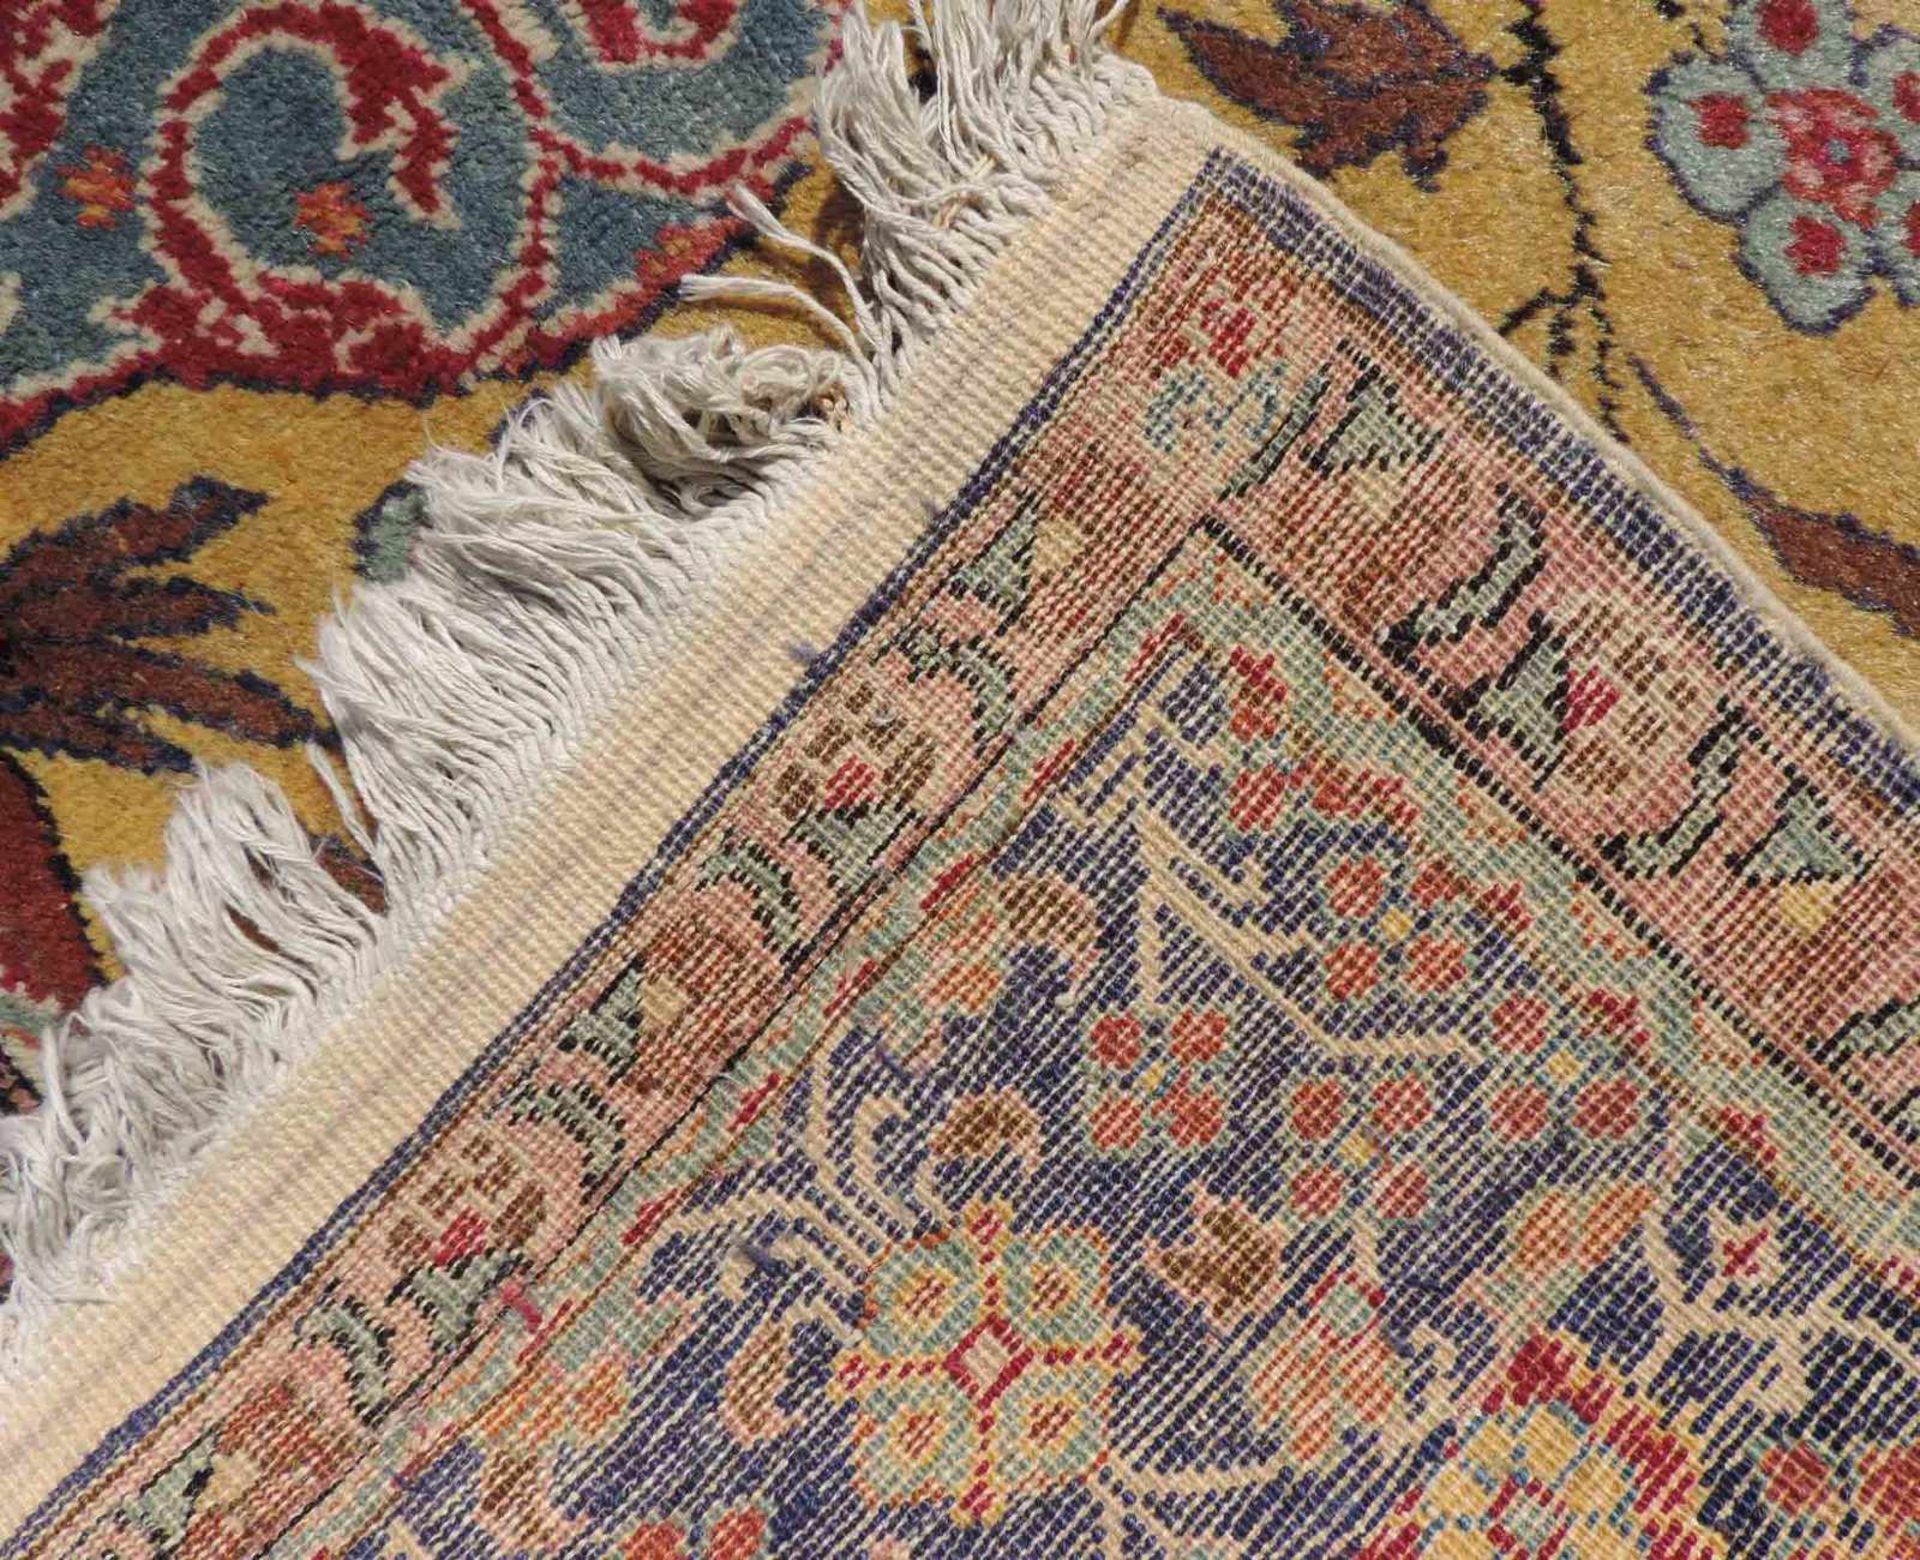 Kayseri Gebetsteppich. Türkei. Antik. Um 1910. 176 cm x 122 cm. Handgeknüpft. Wolle auf Baumwolle. - Bild 5 aus 6